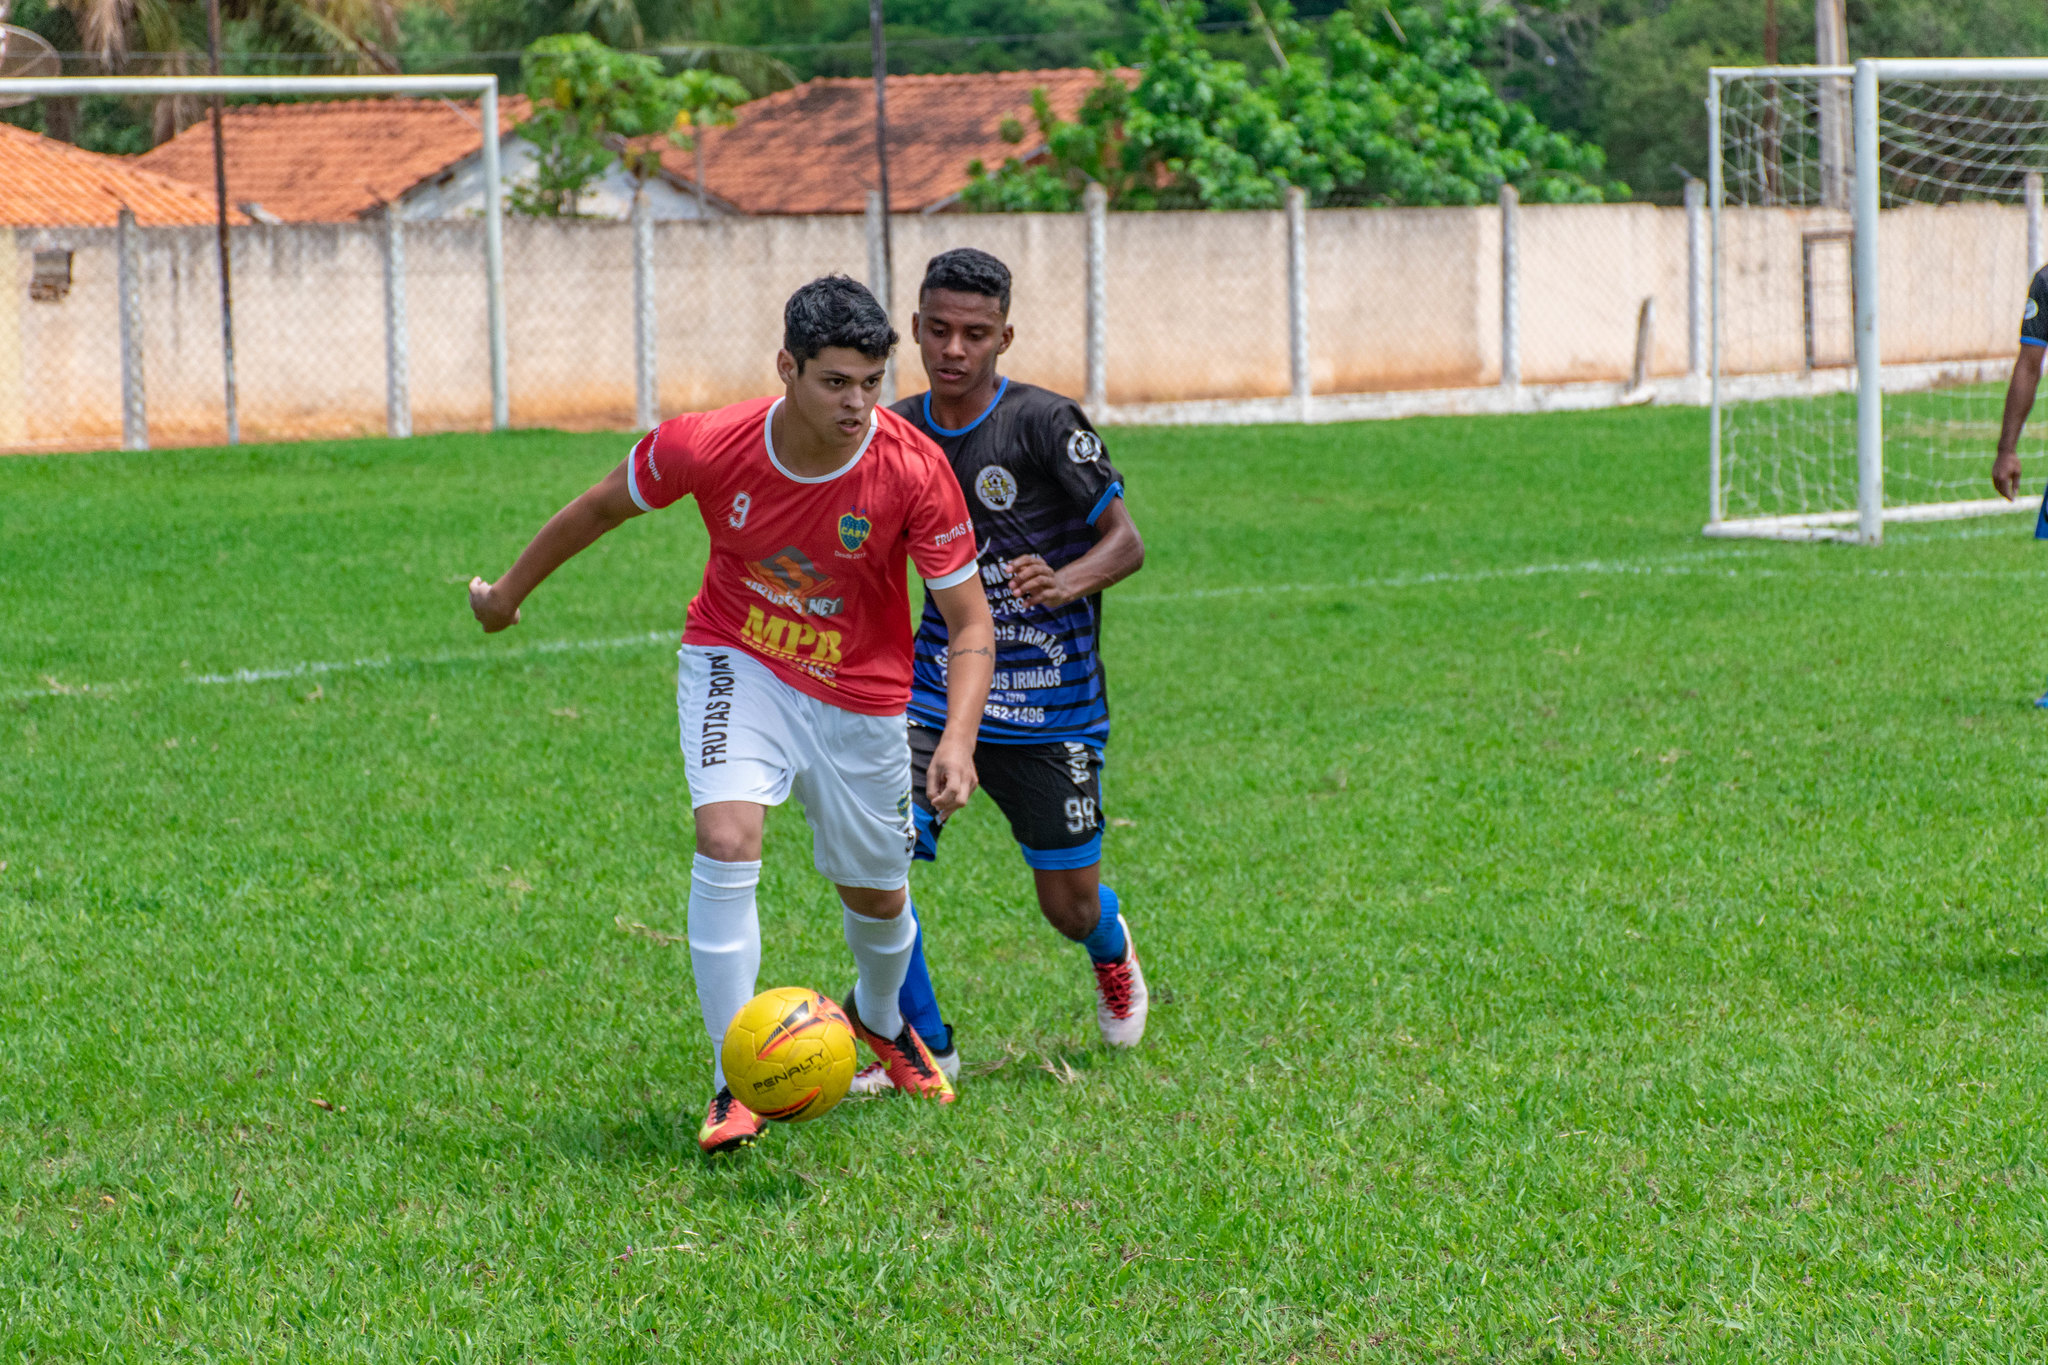 Jogos acontecem no Estádio Municipal Augusto Gonçalves. Foto: Luís Fernando da Silva / Prefeitura Municipal de Urupês